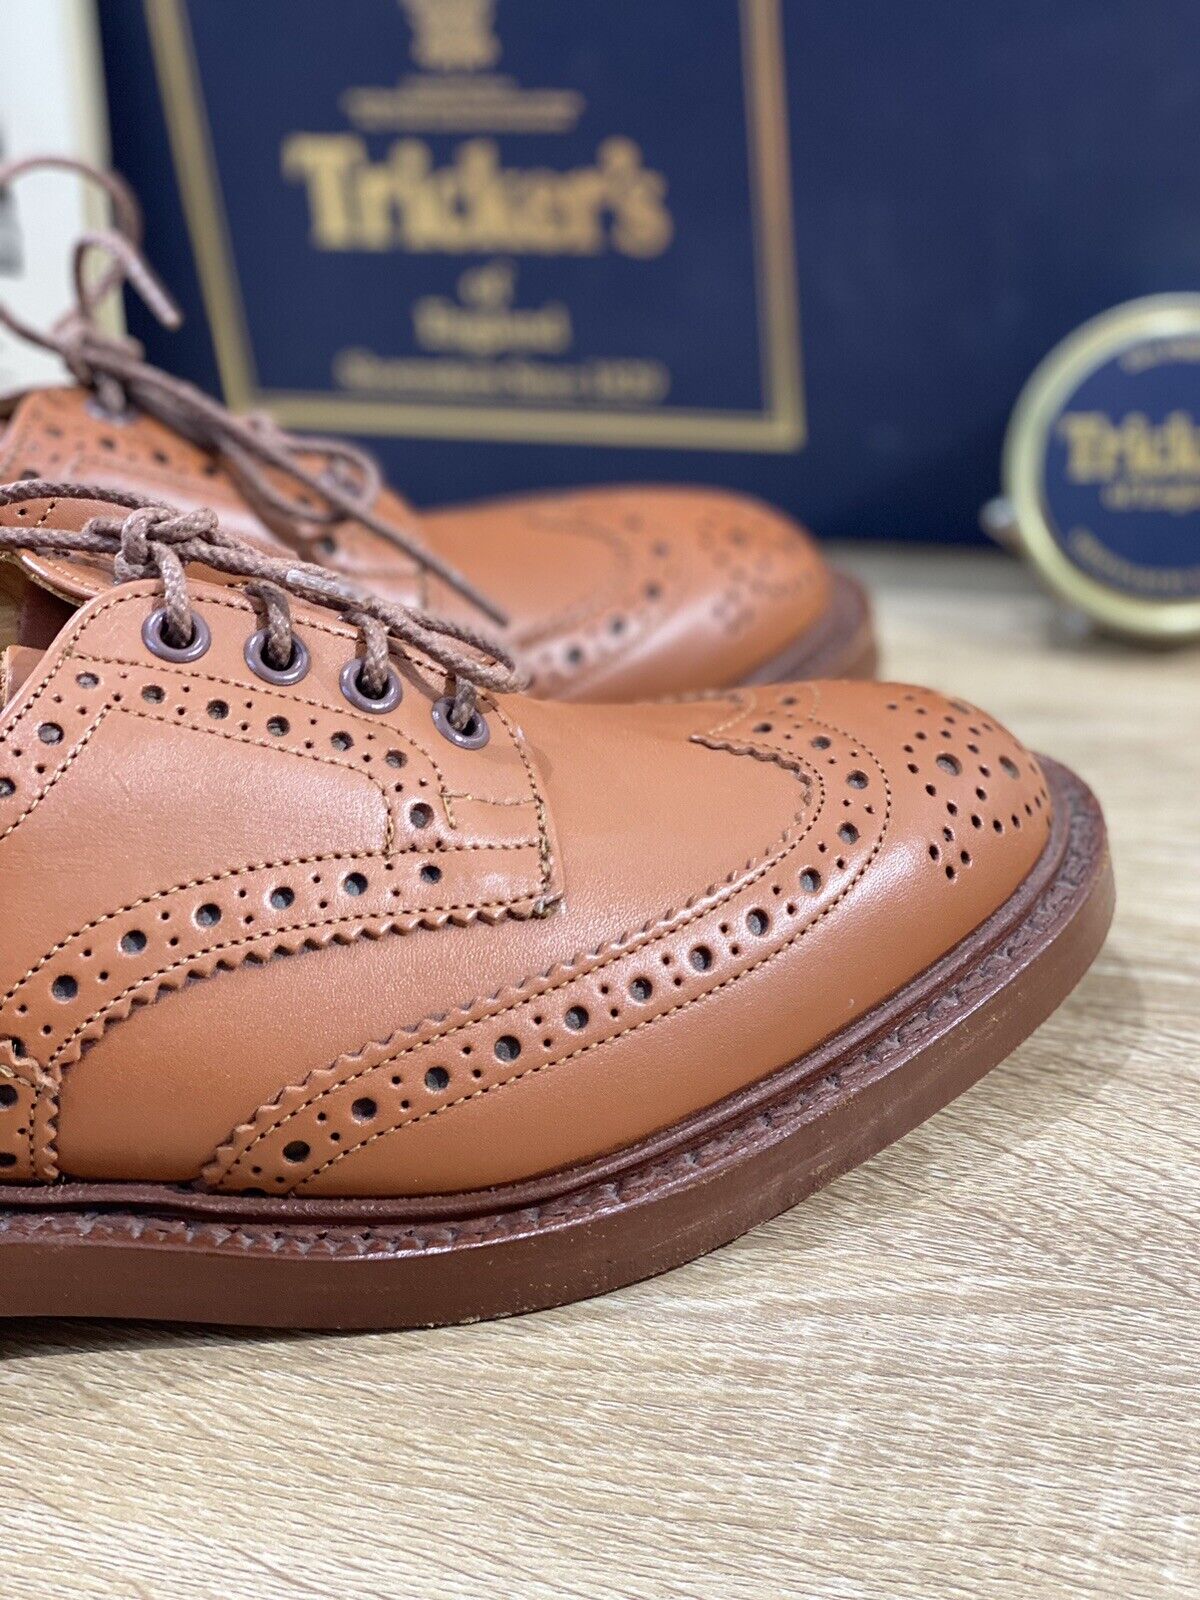 Tricker’s Bourton Country shoe uomo pelle c shade gorse fondo cuoio luxury 7,1/2